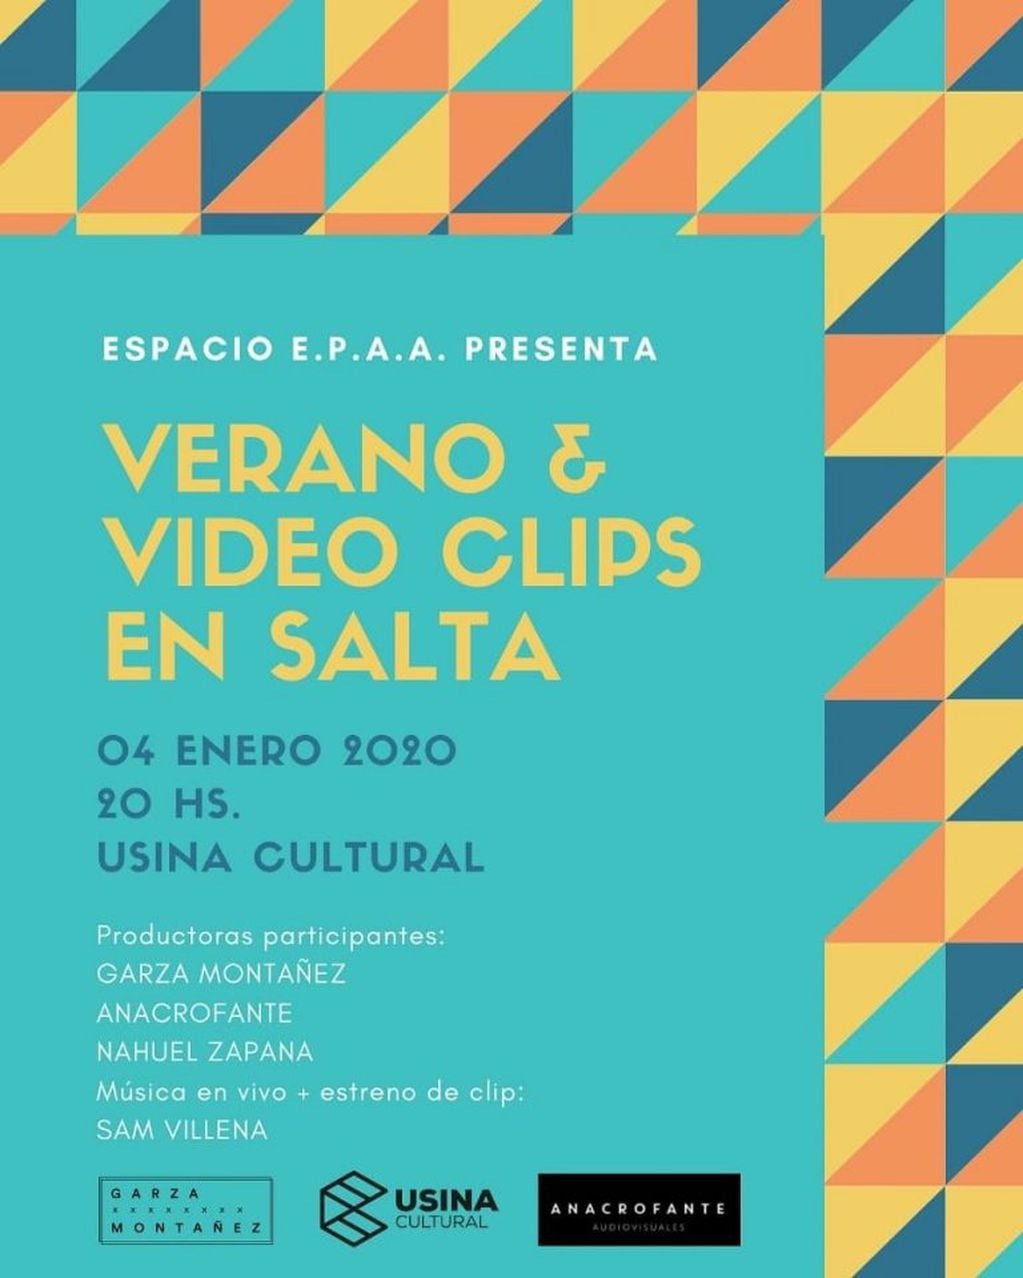 Verano y video clips en Salta (Facebook Usina Cultural)